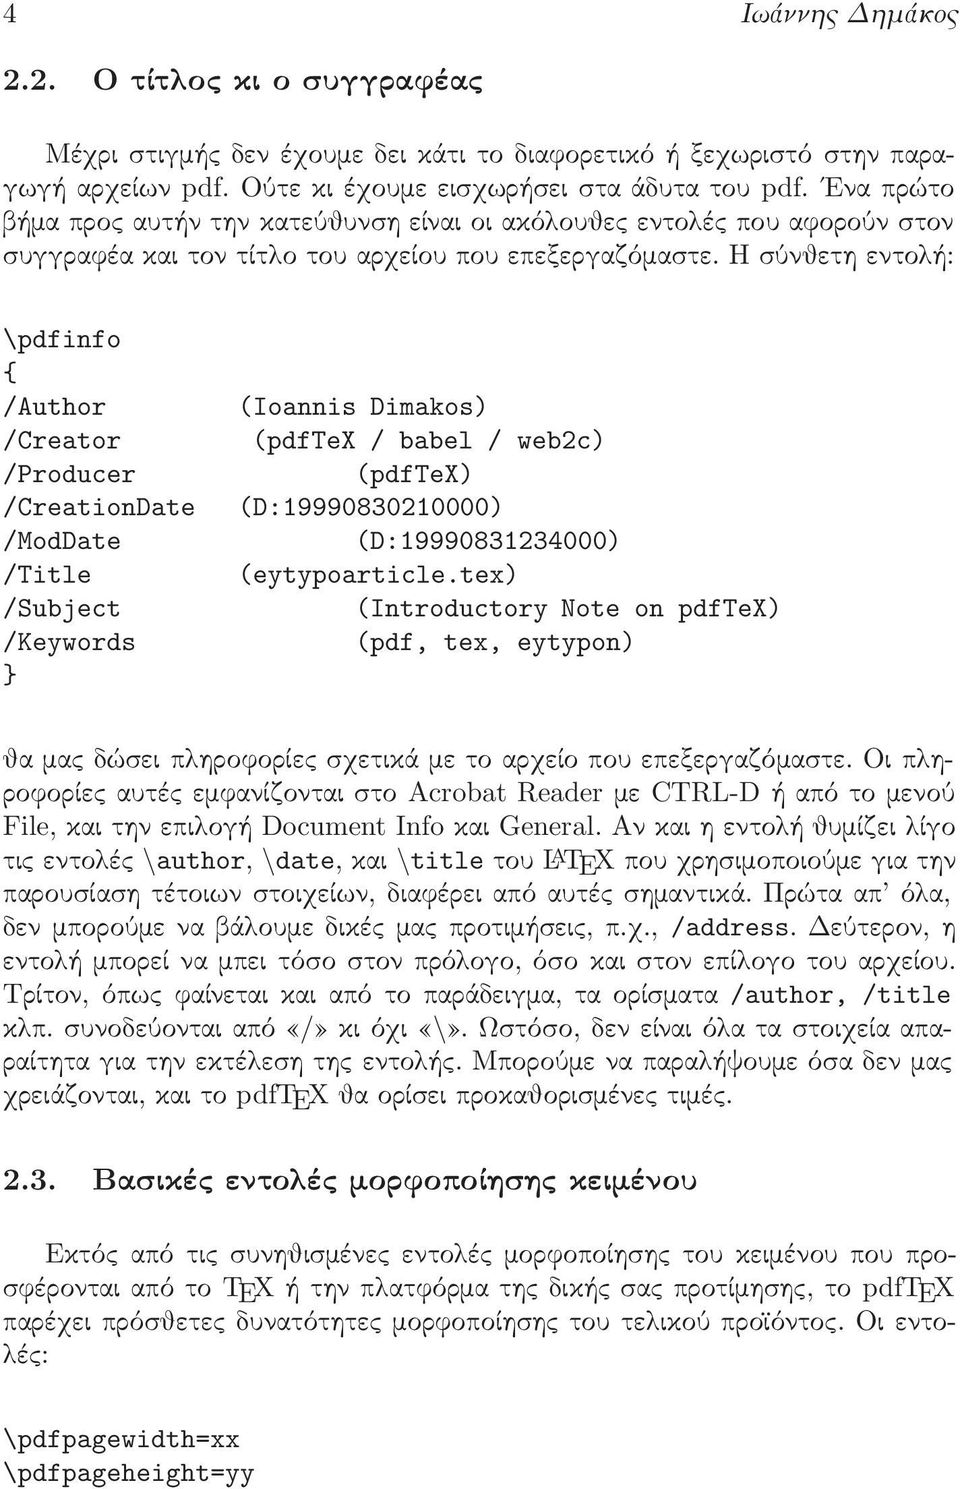 Η σύνθετη εντολή: \pdfinfo { /Author (Ioannis Dimakos) /Creator (pdftex / babel / web2c) /Producer (pdftex) /CreationDate (D:19990830210000) /ModDate (D:19990831234000) /Title (eytypoarticle.